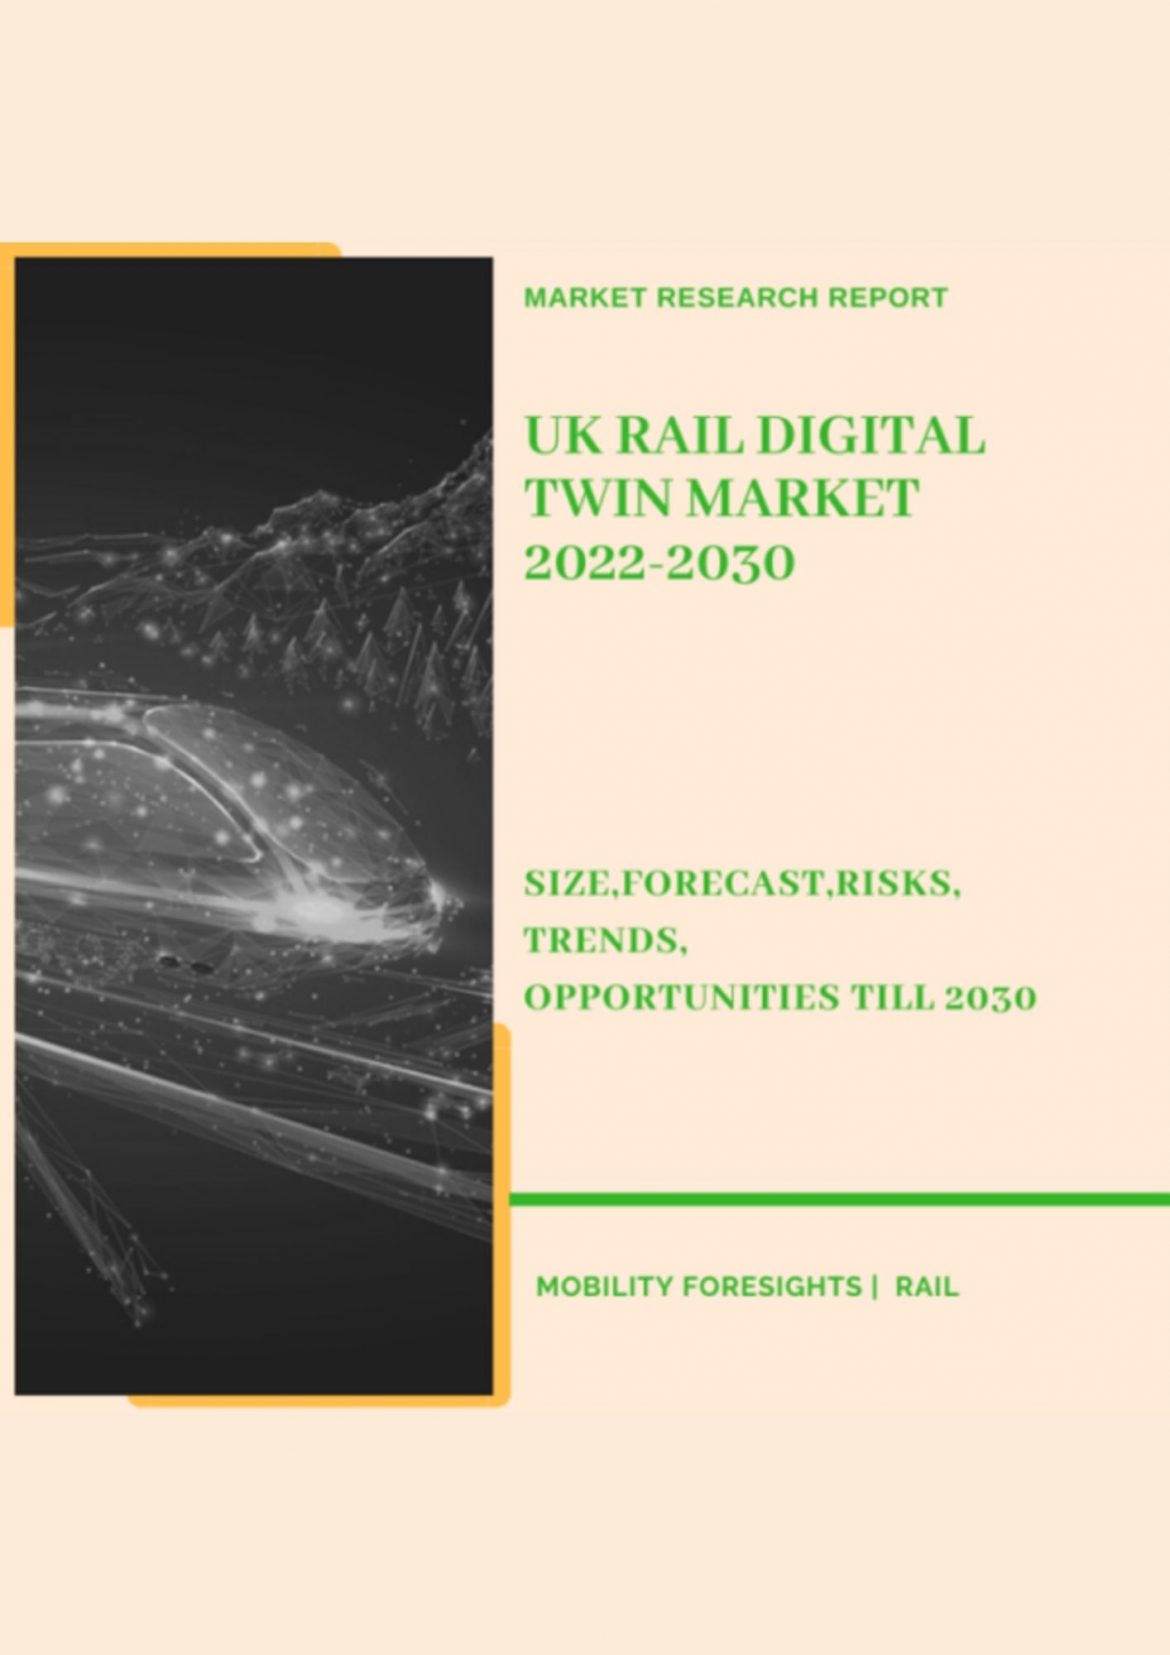 UK Rail Digital Twin Market 2022-2030